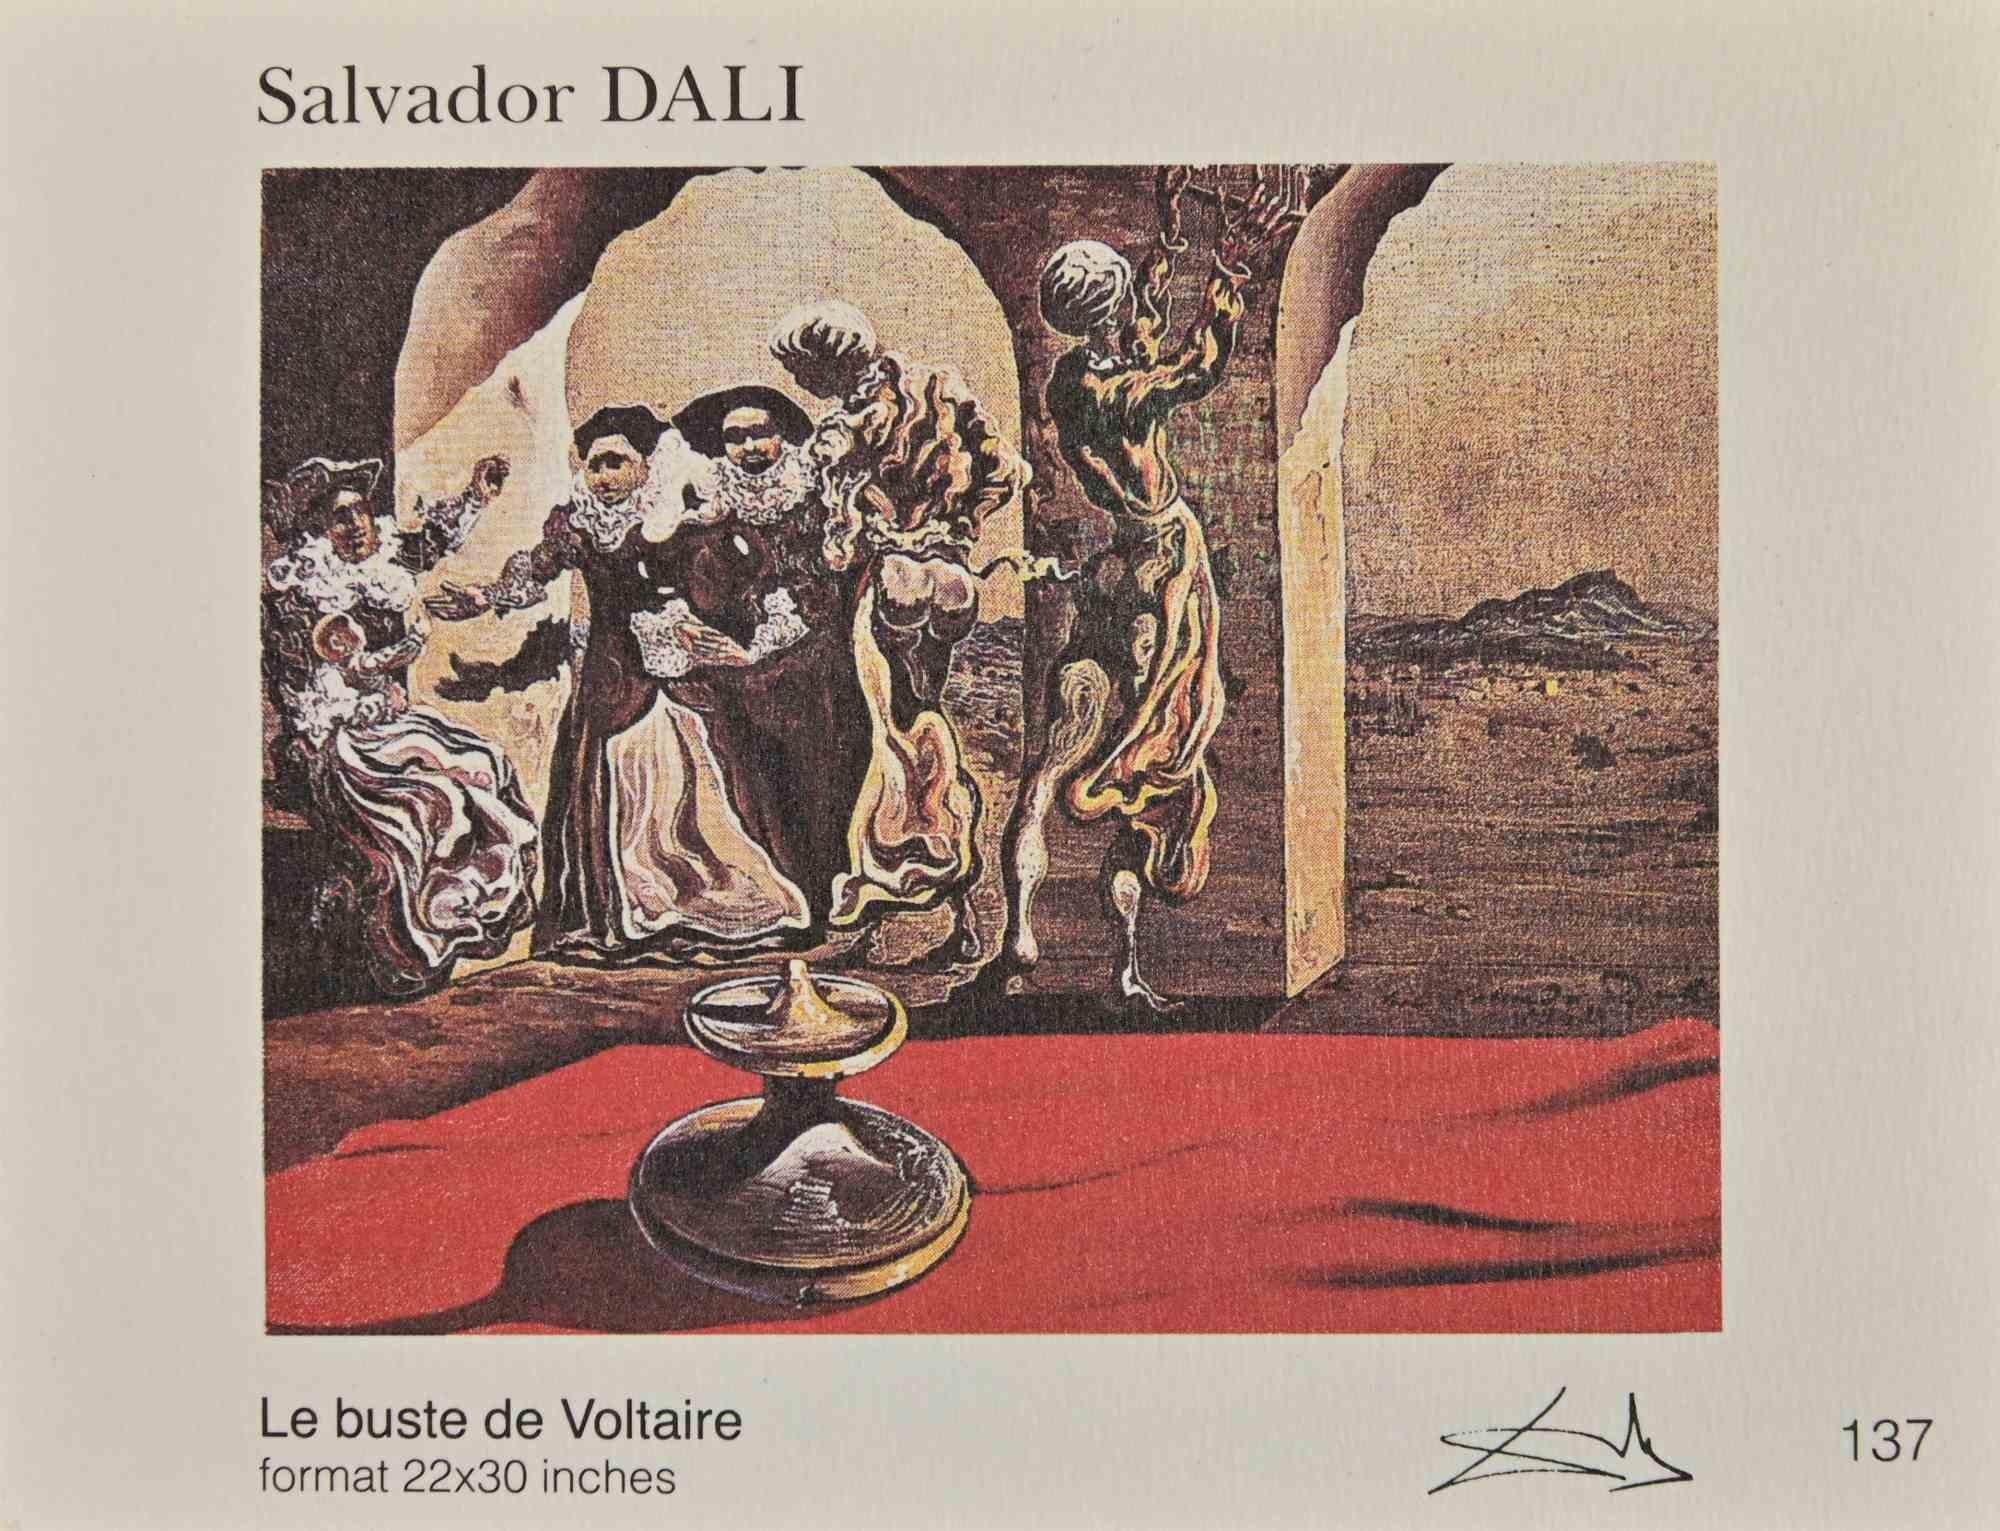 Sammlung von Karten nach Salvador Dalì mit 26 Stücken.

Gute Bedingungen.

Mit Titeln und signiert auf der Platte.